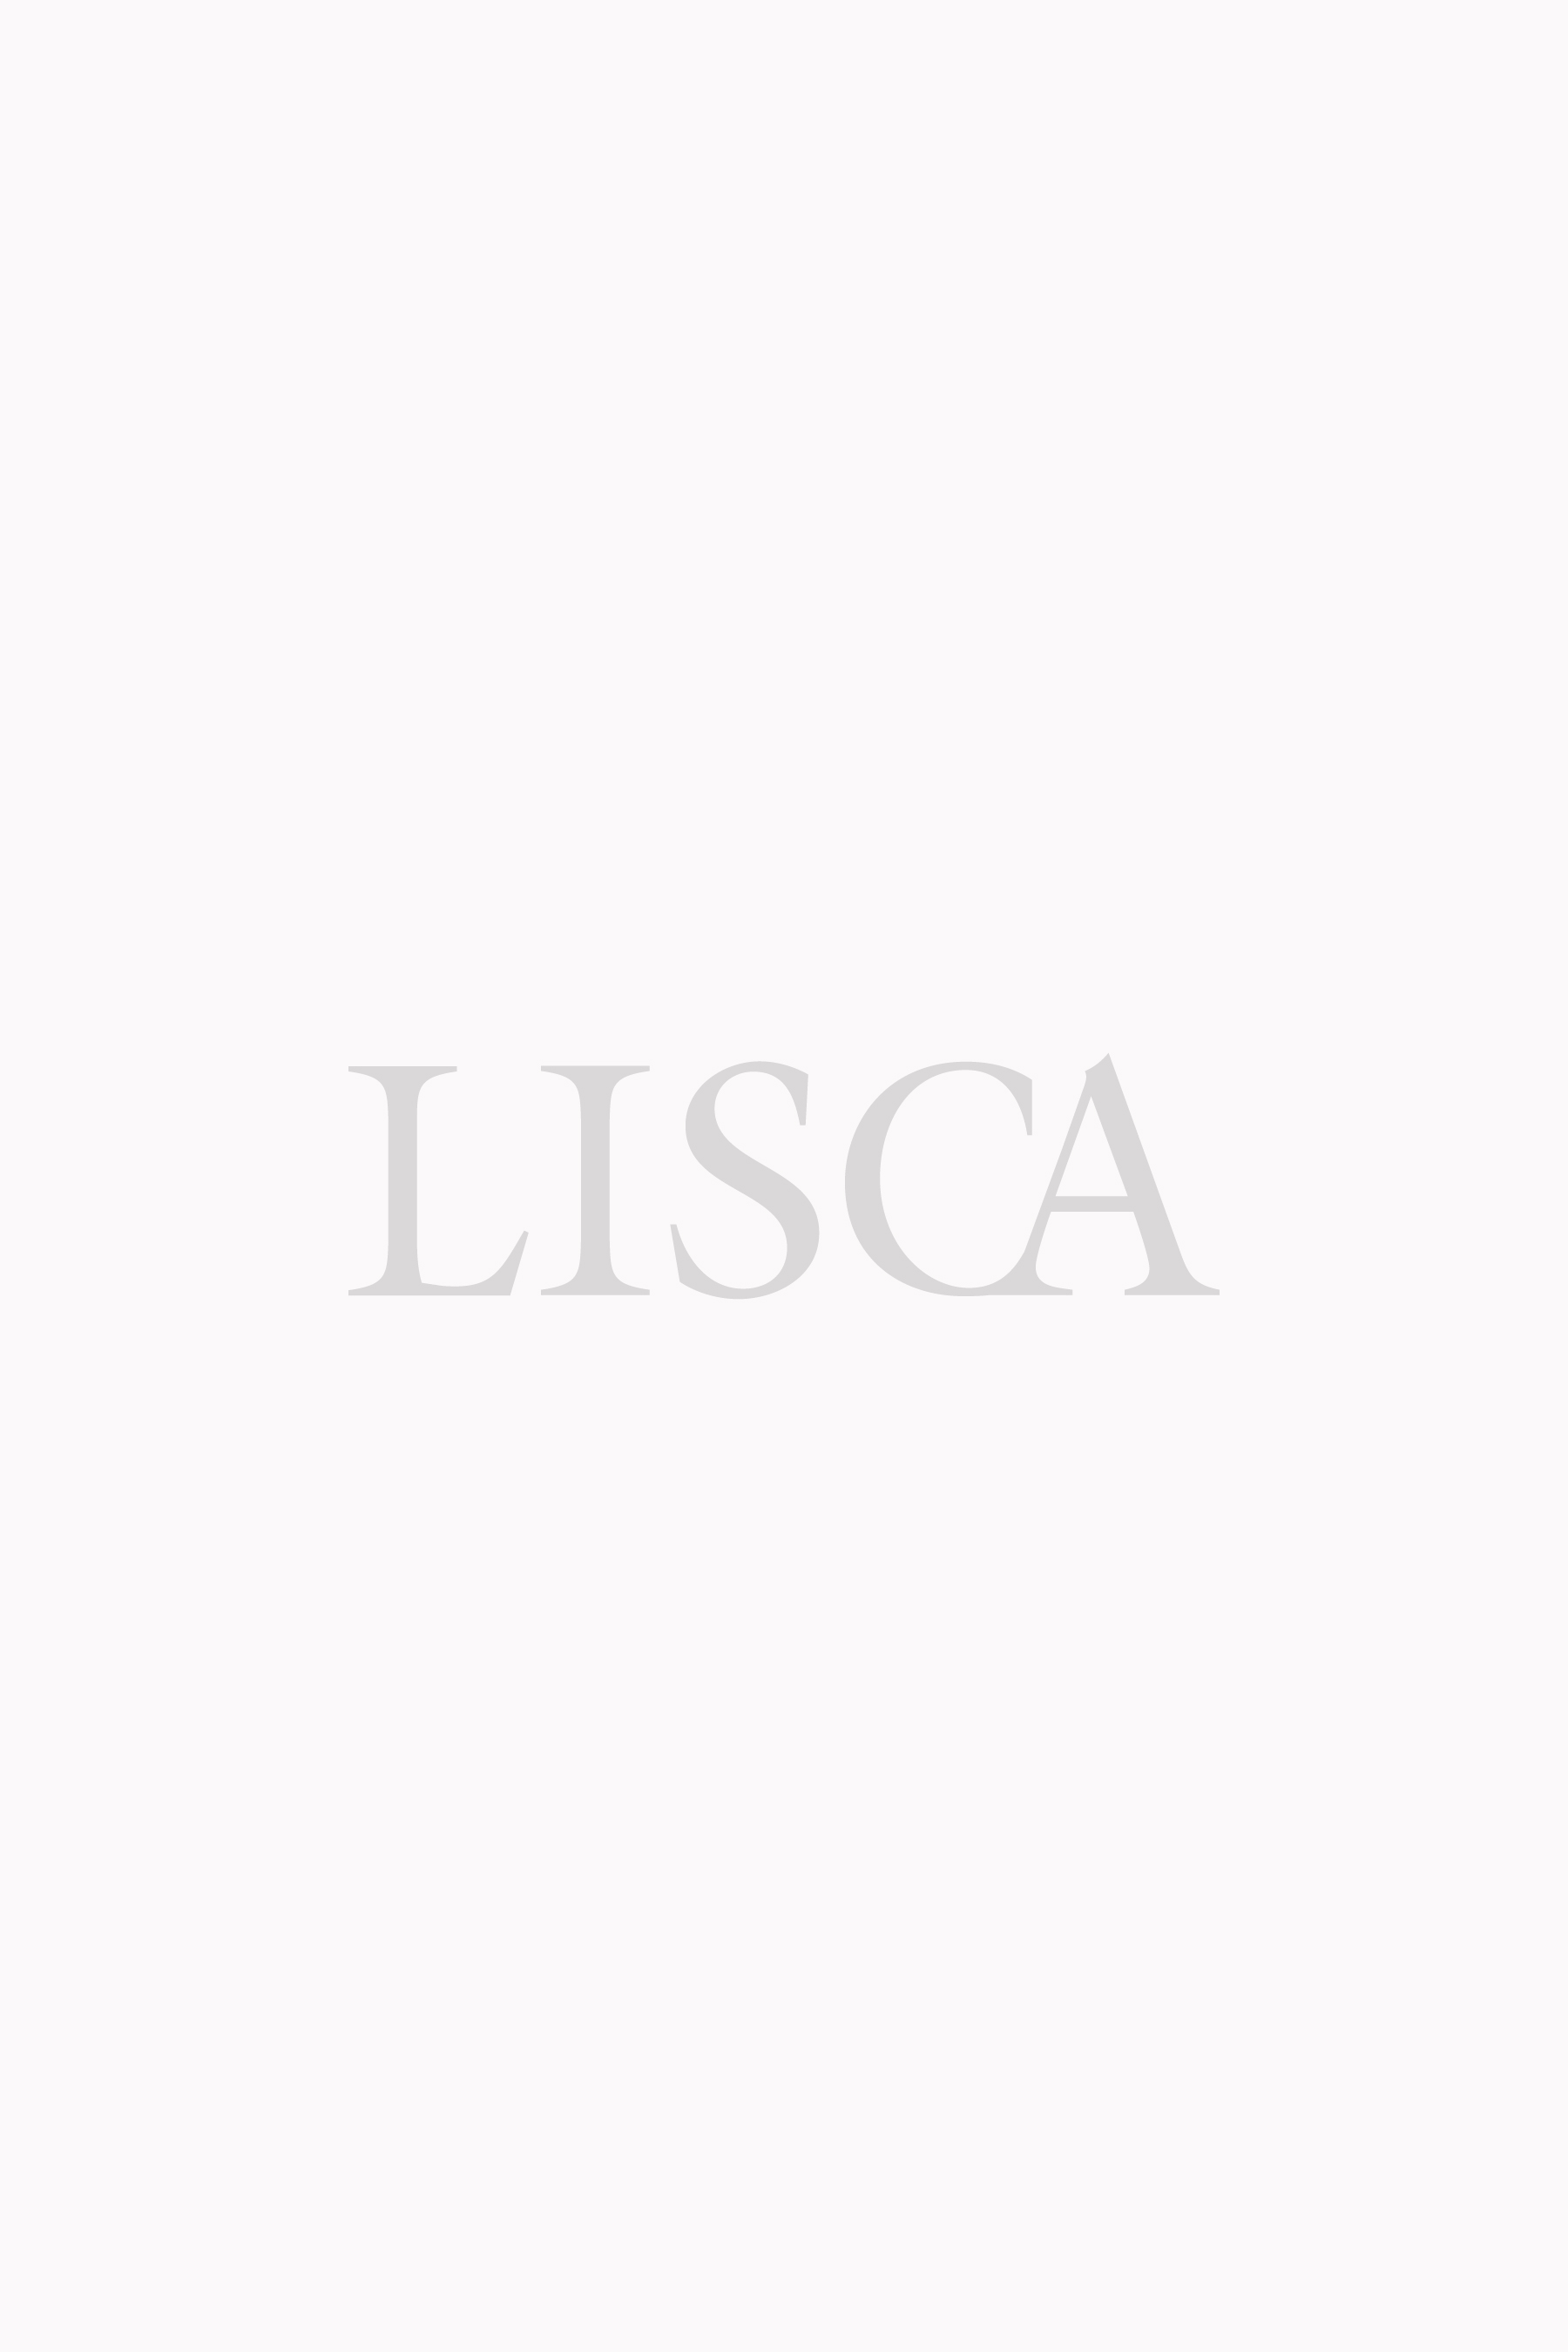 Lisca bh - Die besten Lisca bh ausführlich verglichen!